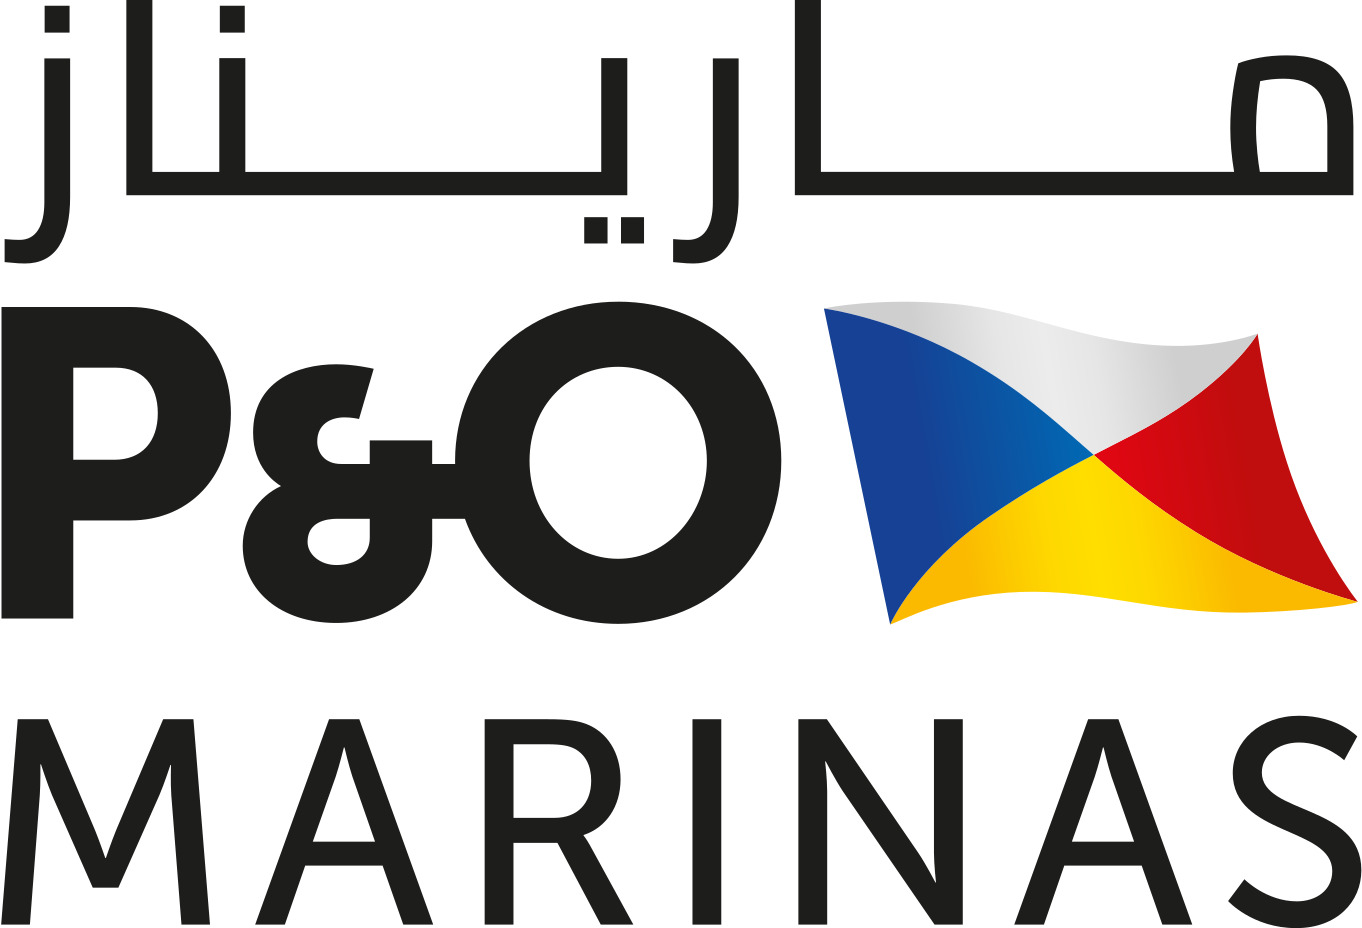 P&O Marinas Sailing Academy